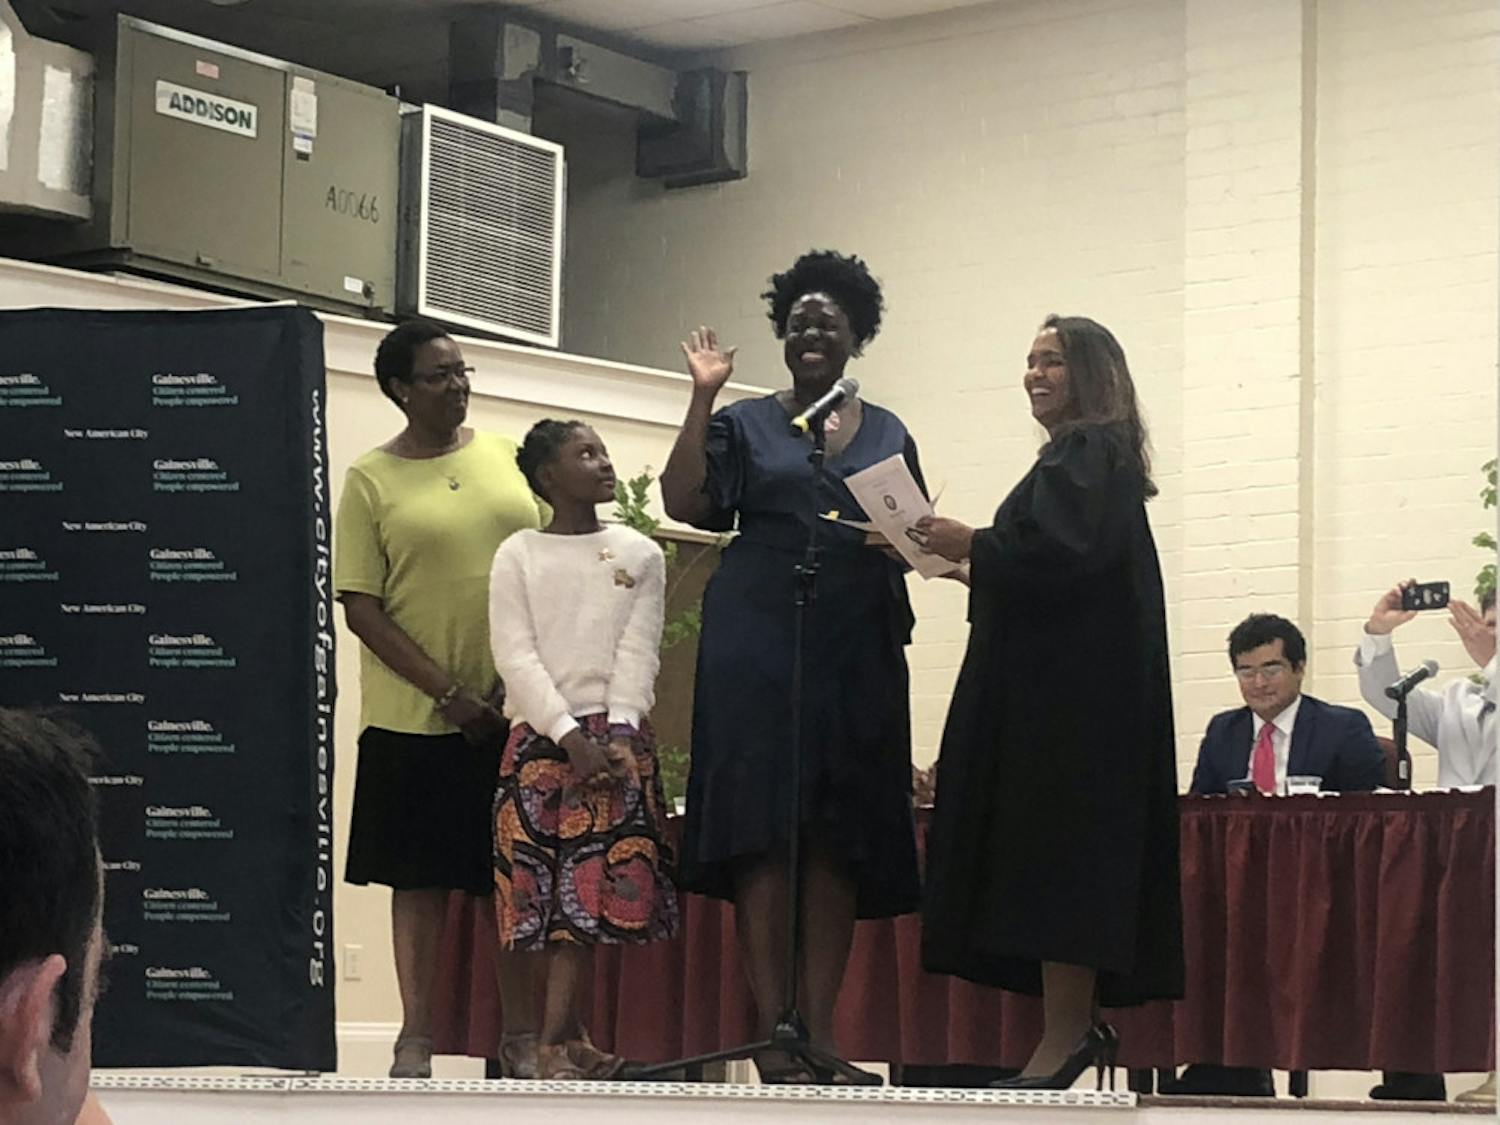 Gail Johnson (center right) is sworn into office alongside her daughter Zora (center left).